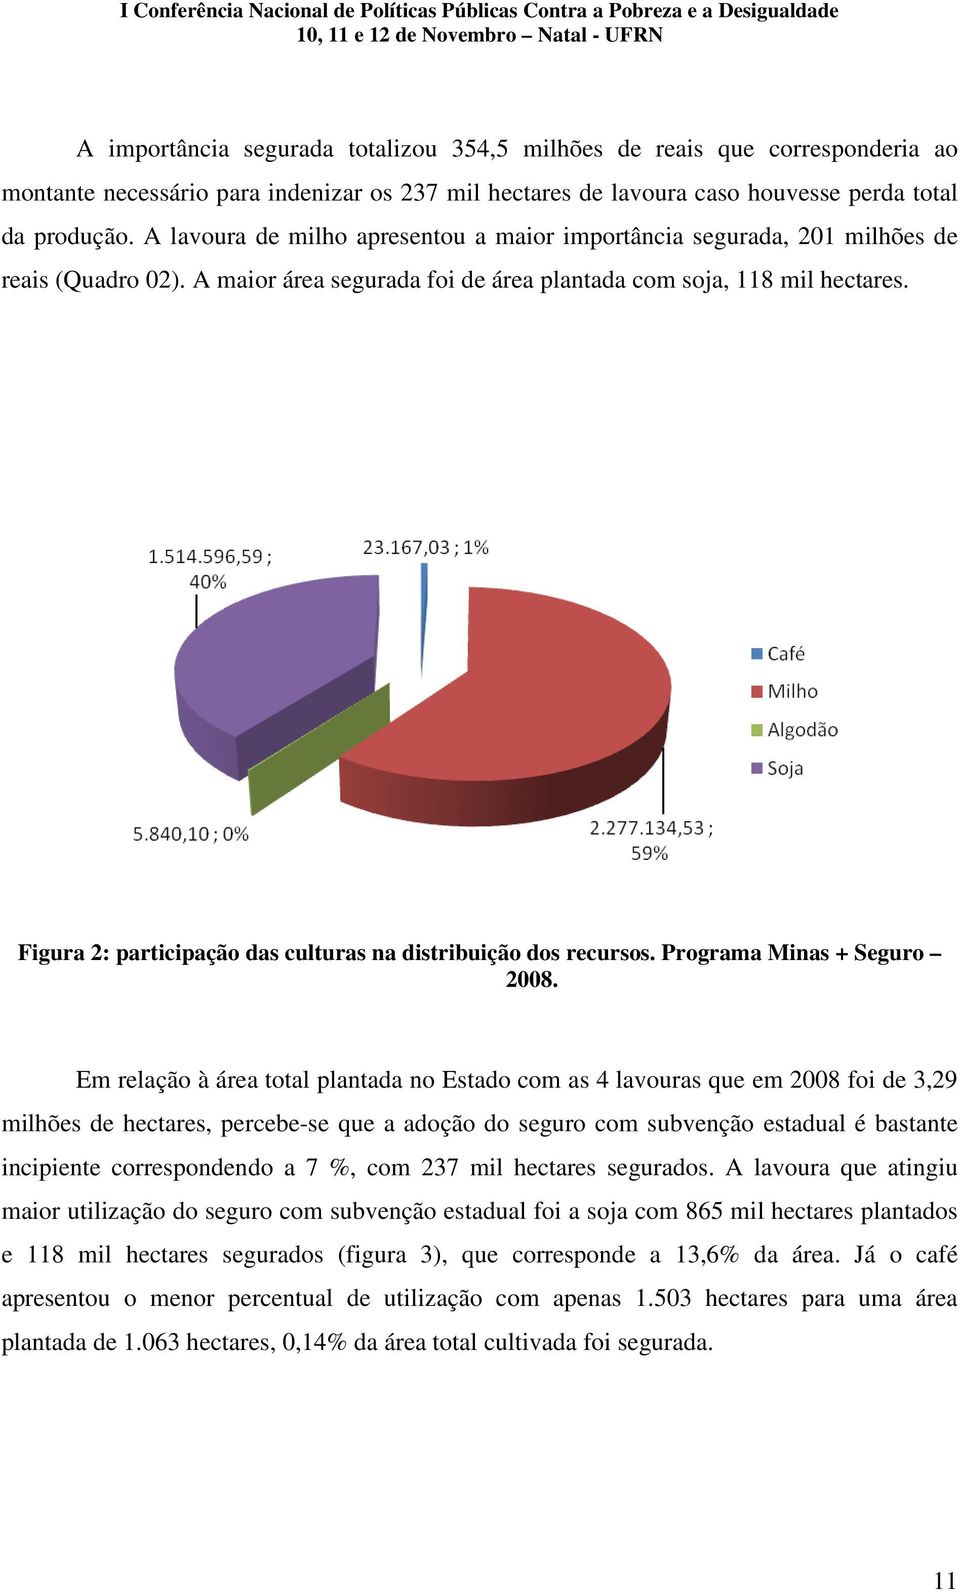 Figura 2: participação das culturas na distribuição dos recursos. Programa Minas + Seguro 2008.